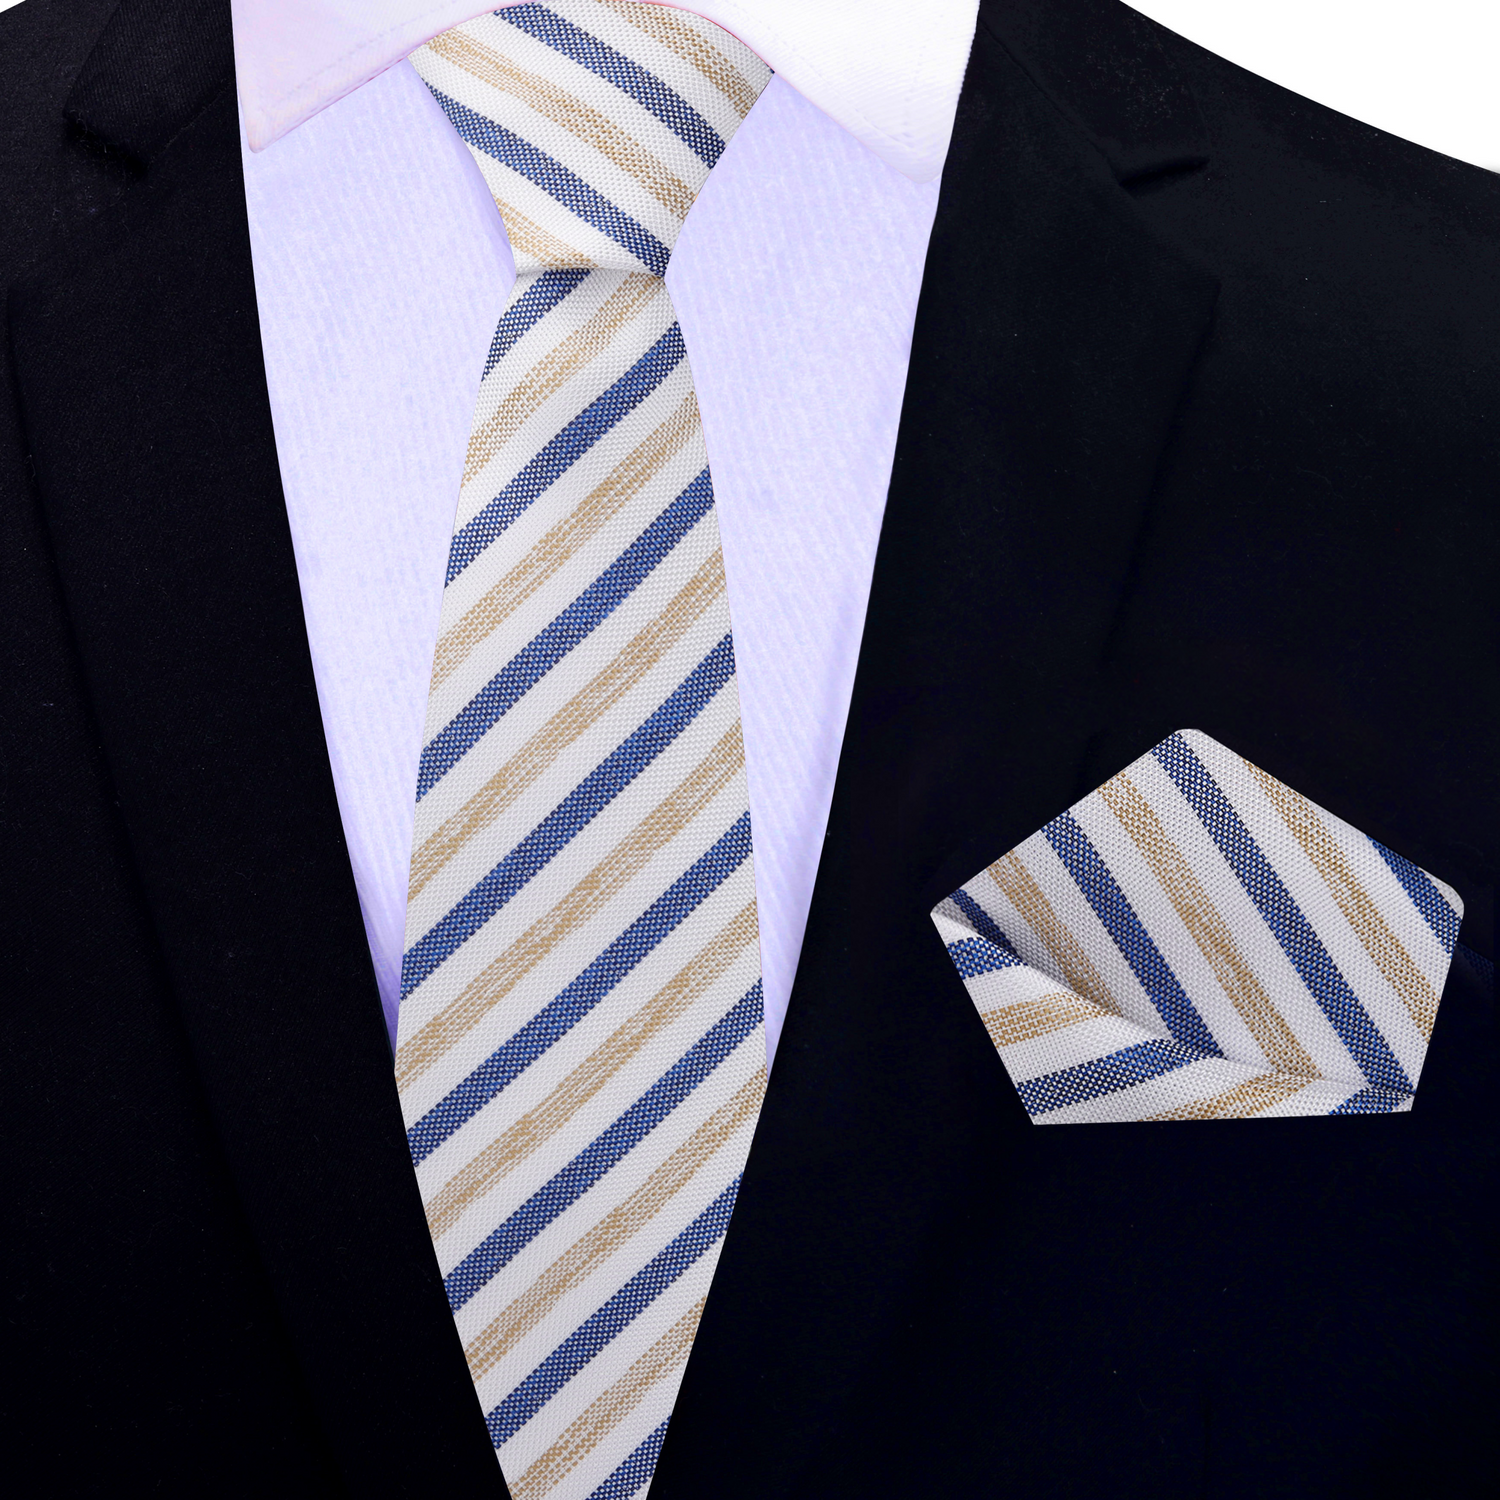 Thin Tie: White, Dark Blue, Light Brown Stripe Necktie with Cream and Square